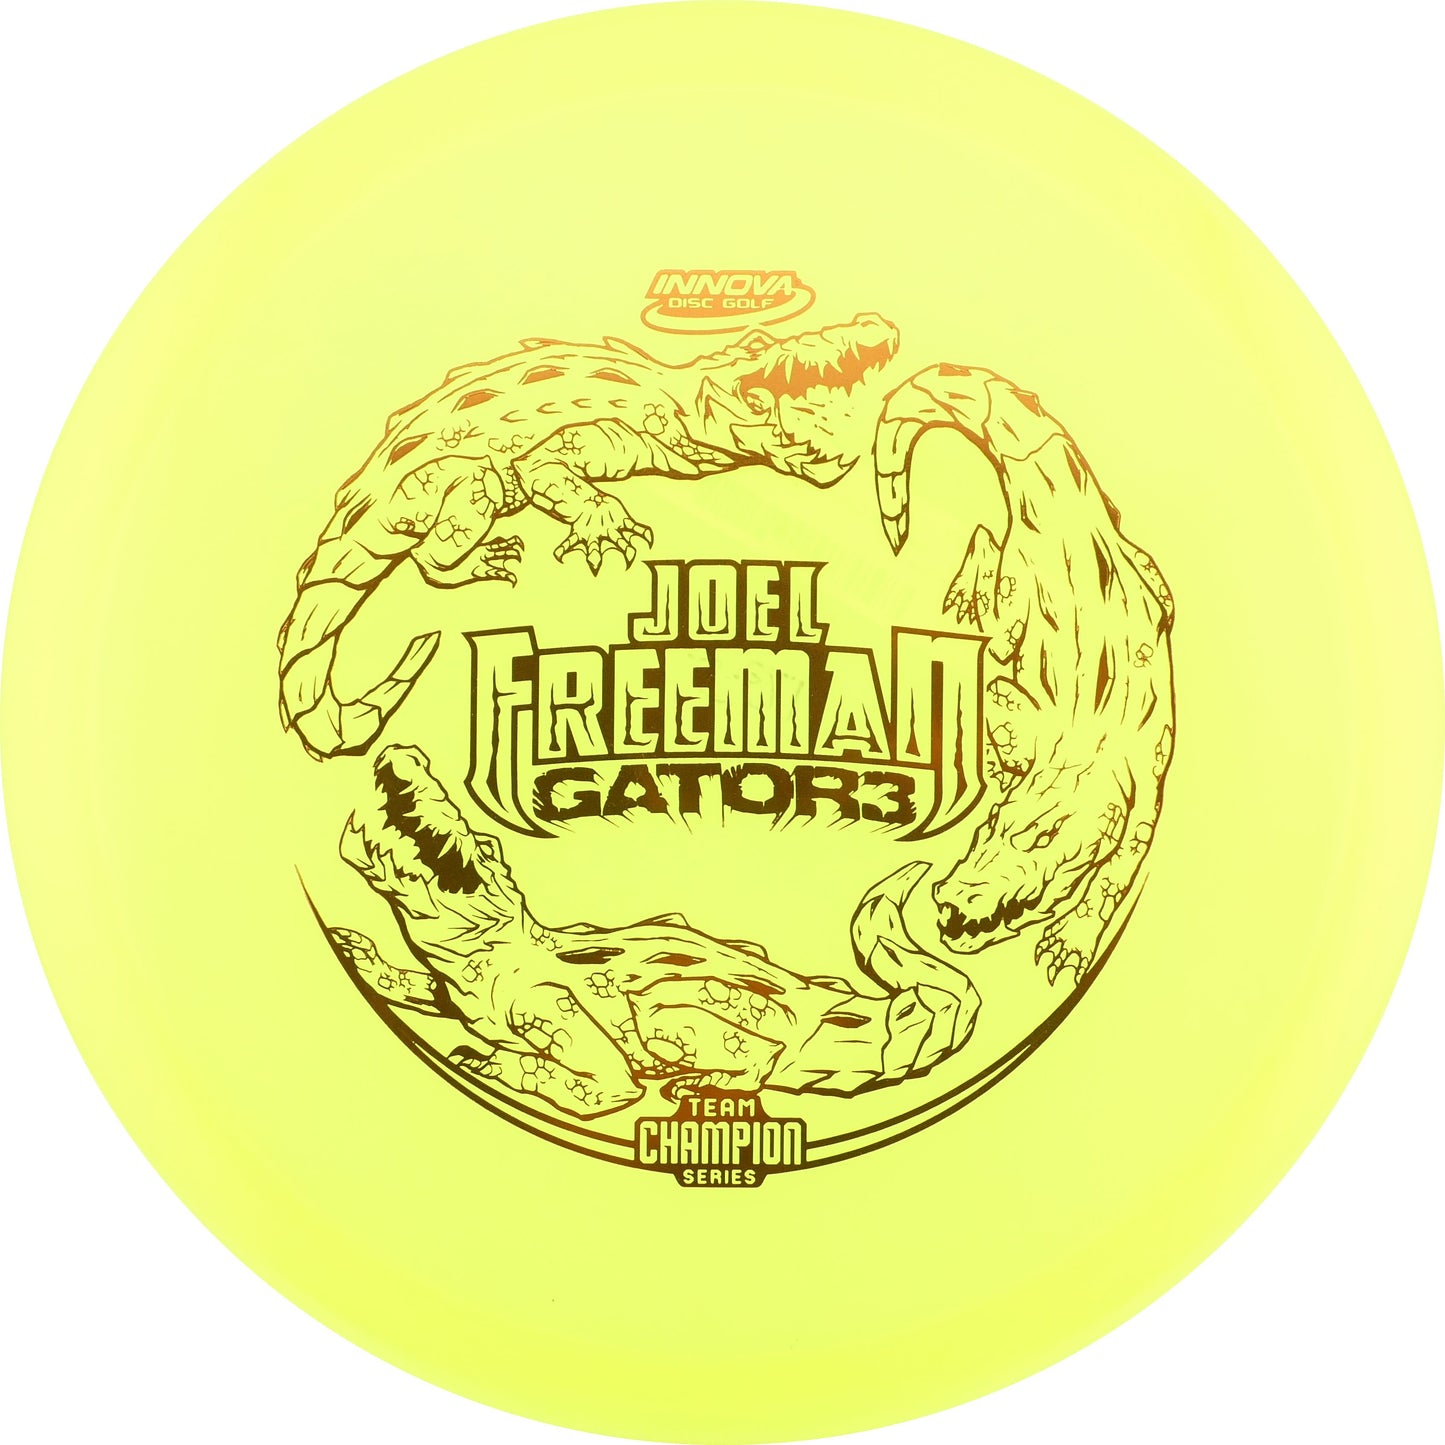 Champion Gator3 - Joel Freeman Tour Series (Yellow)